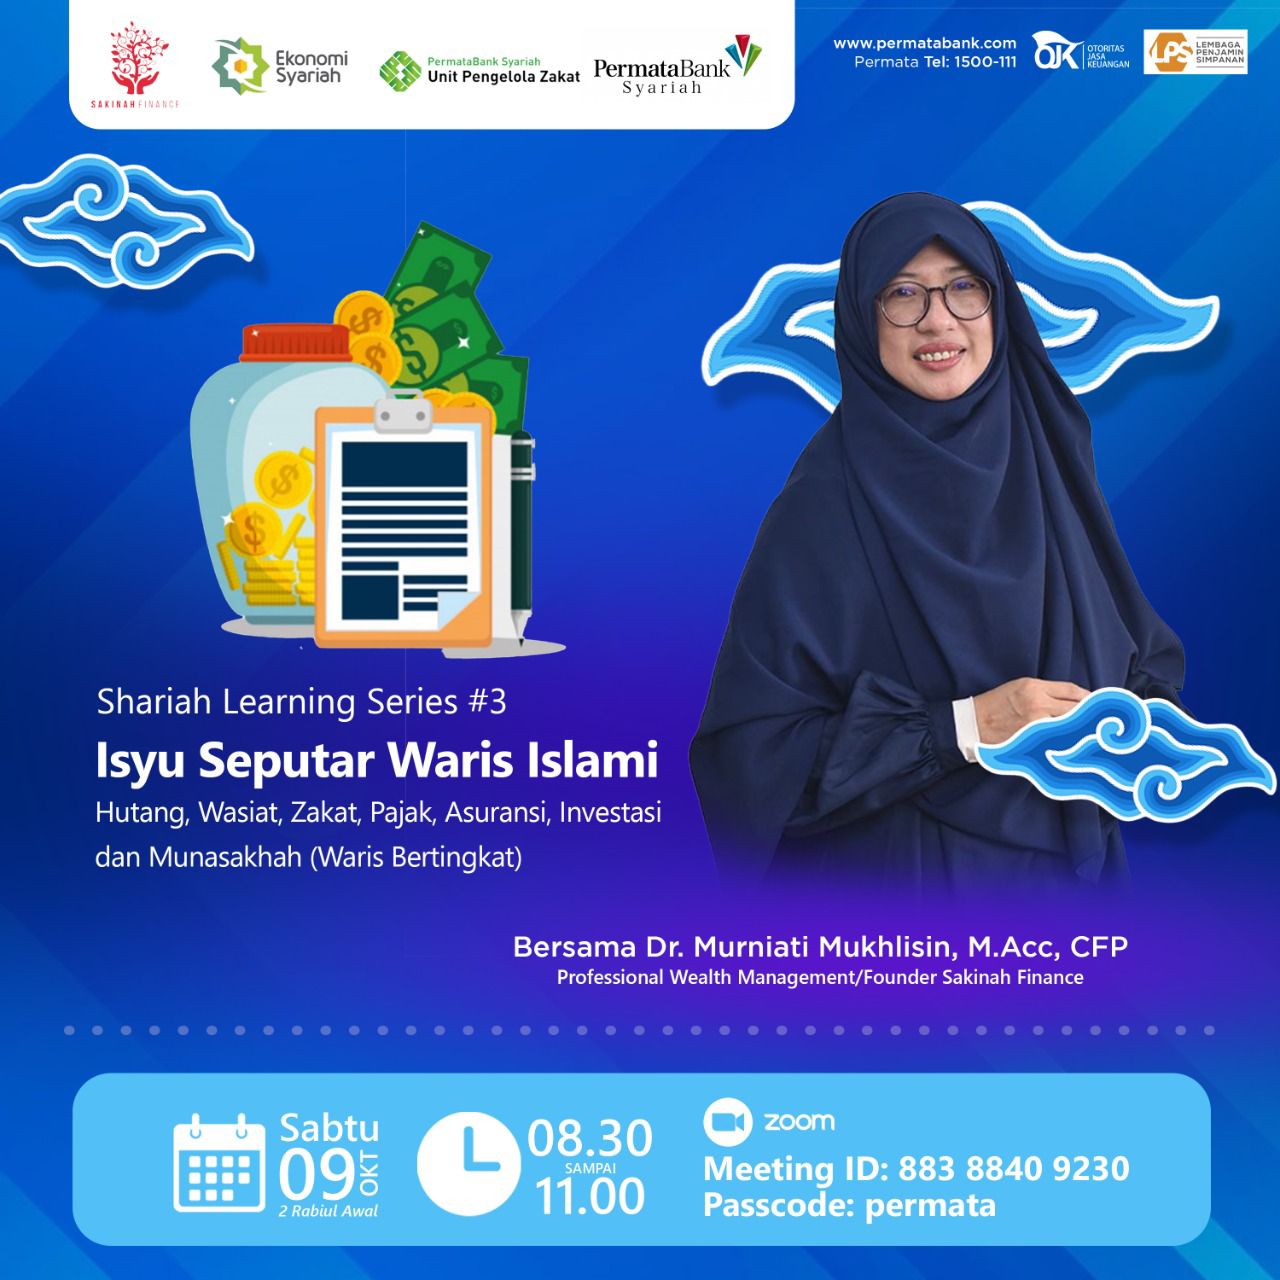 Webinar Spesial Bersama PermataBank Syariah | Sharia Learning Series : “Isyu Seputar Waris Islami: Wasiat, Zakat, Pajak, Asuransi, Investasi dan Munasakhah”